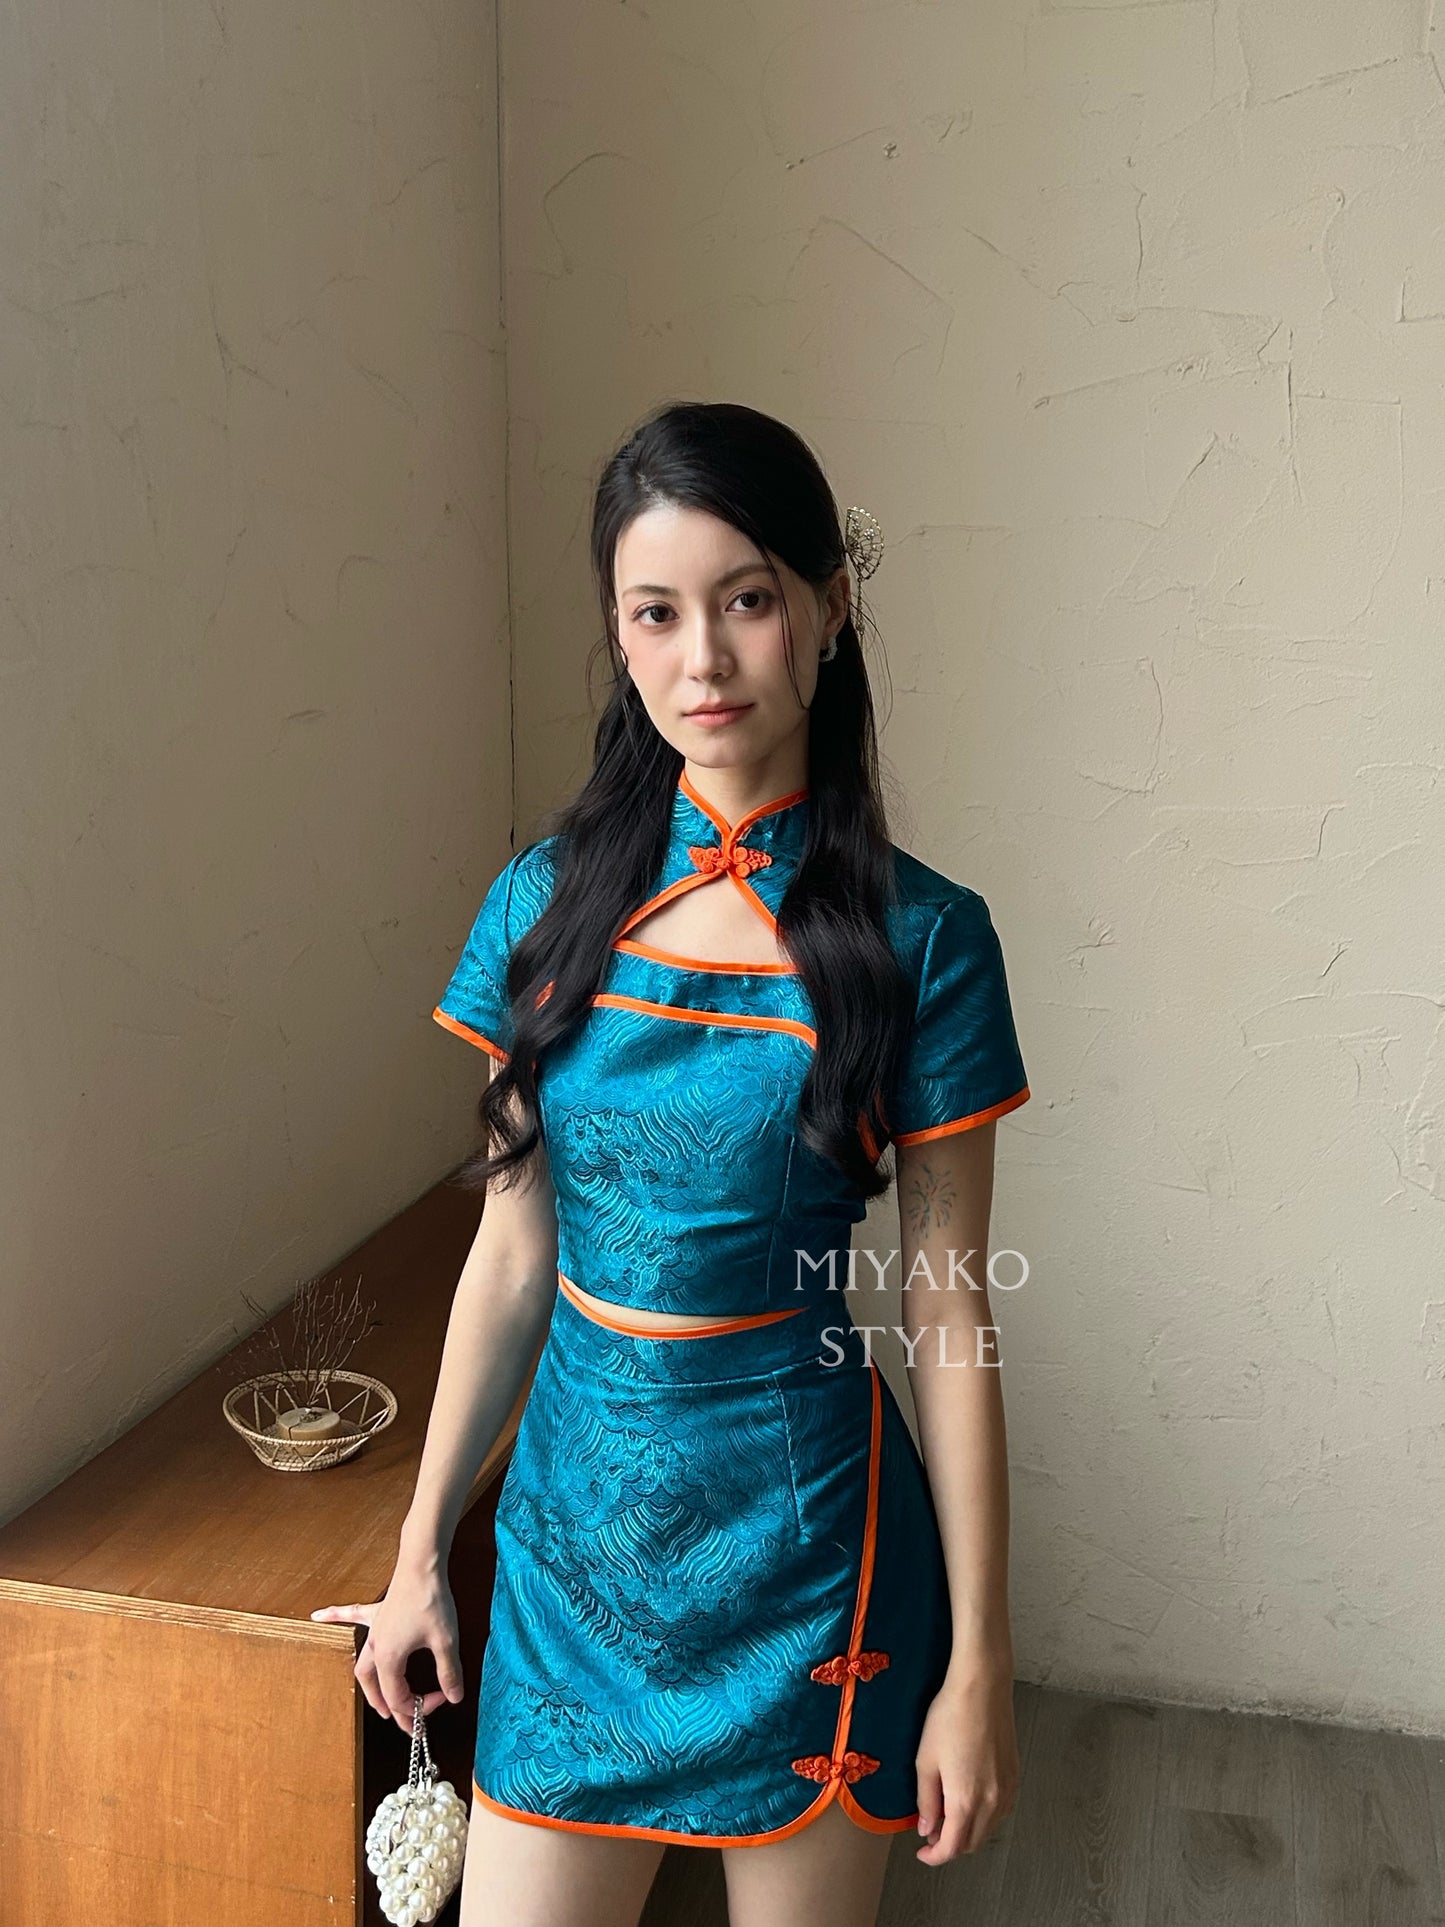 【龍華富貴】 Royal Cheongsam mini skirt in Peacock blue 孔雀蓝 (裙子only)